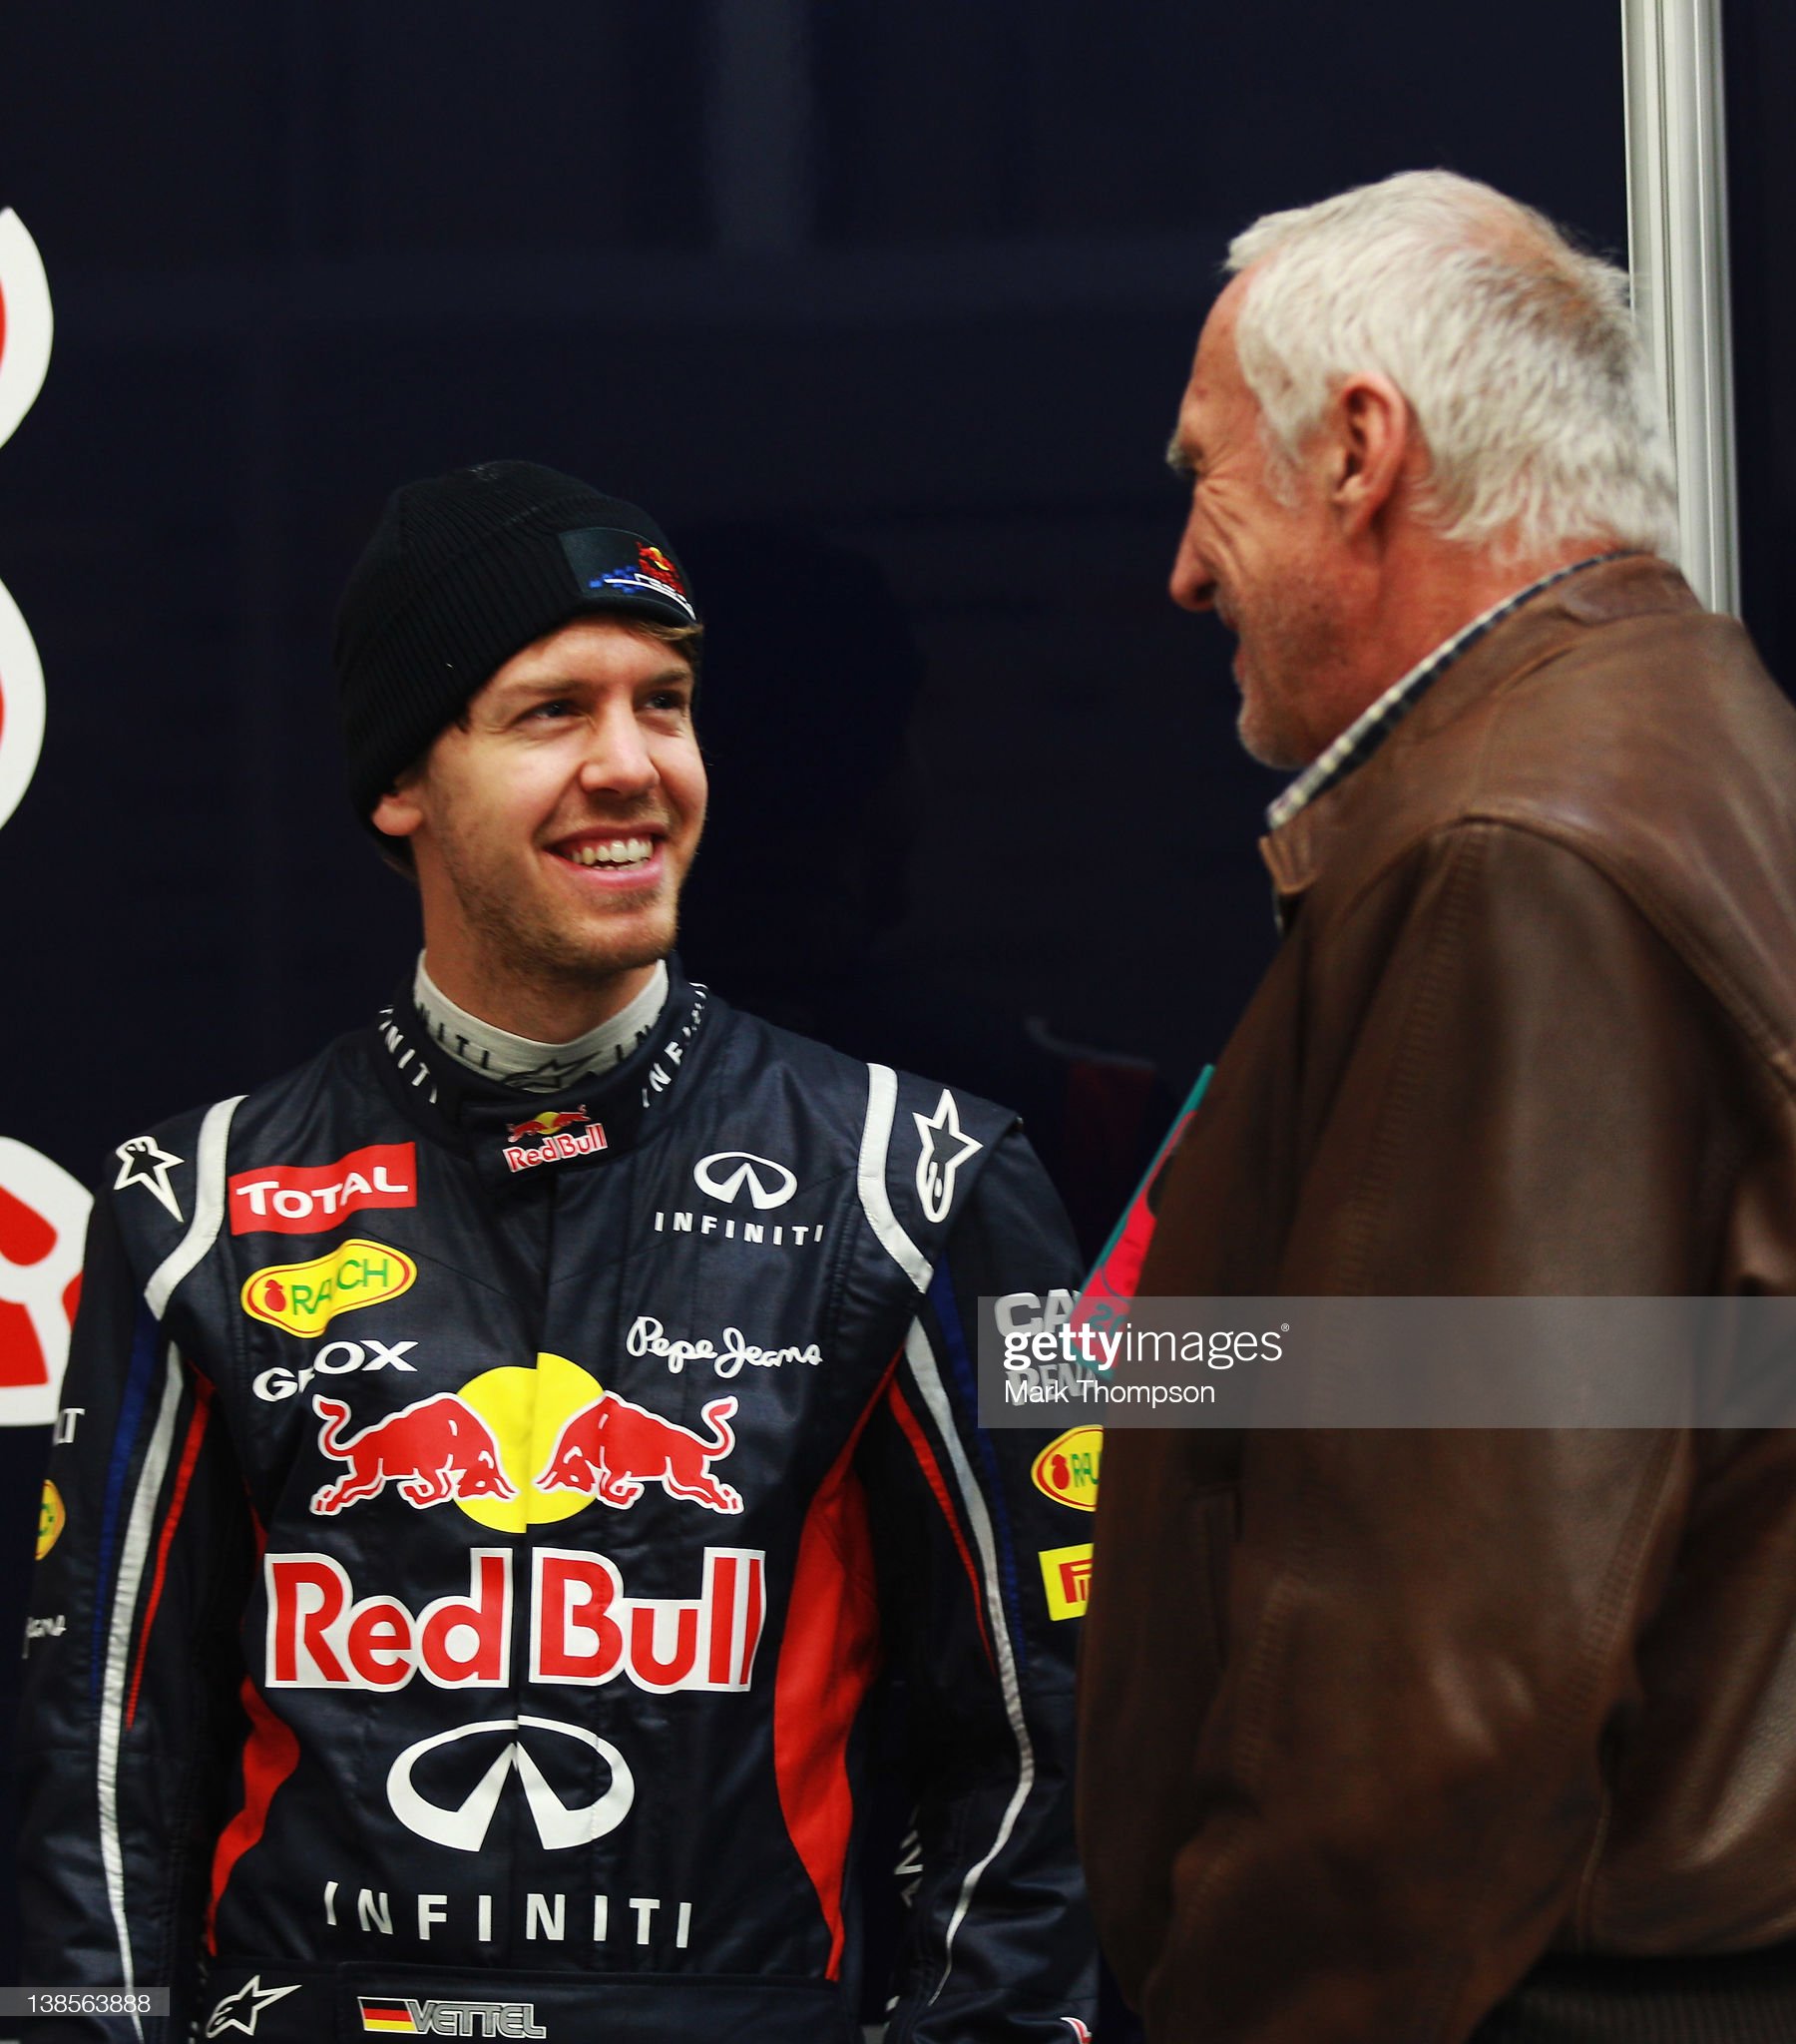 Sebastian Vettel talks with Red Bull Racing team owner Dietrich Mateschitz.